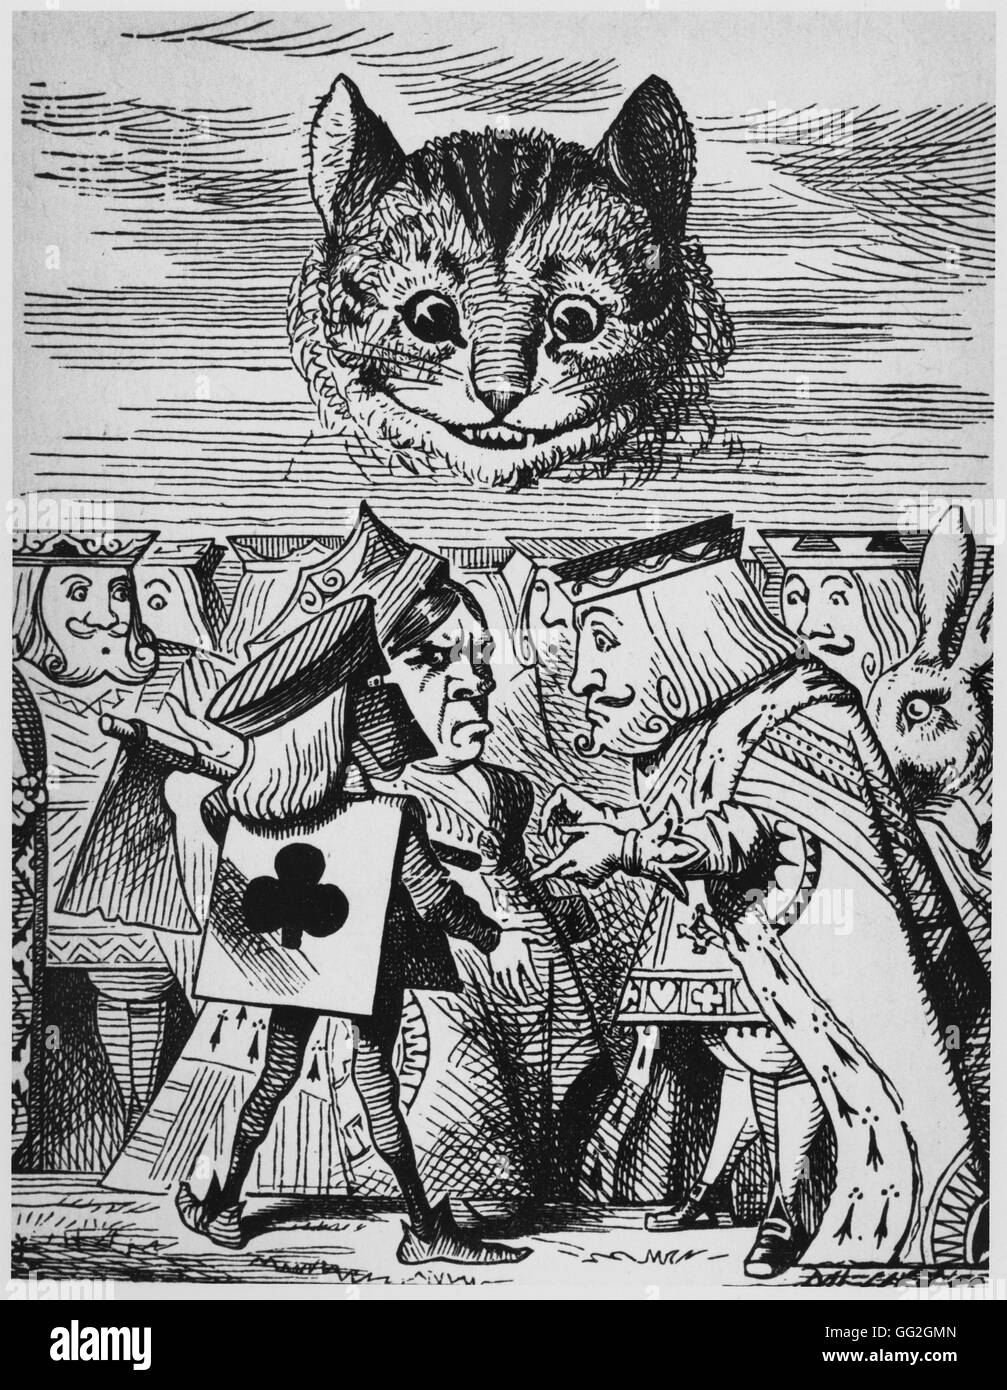 Illustration von Sir John Tenniel Alice in Wonderland von Lewis Carroll London, MacMilllans, argumentiert 1865 Henker mit König über Cheshire Katze den Kopf abschneiden Stockfoto